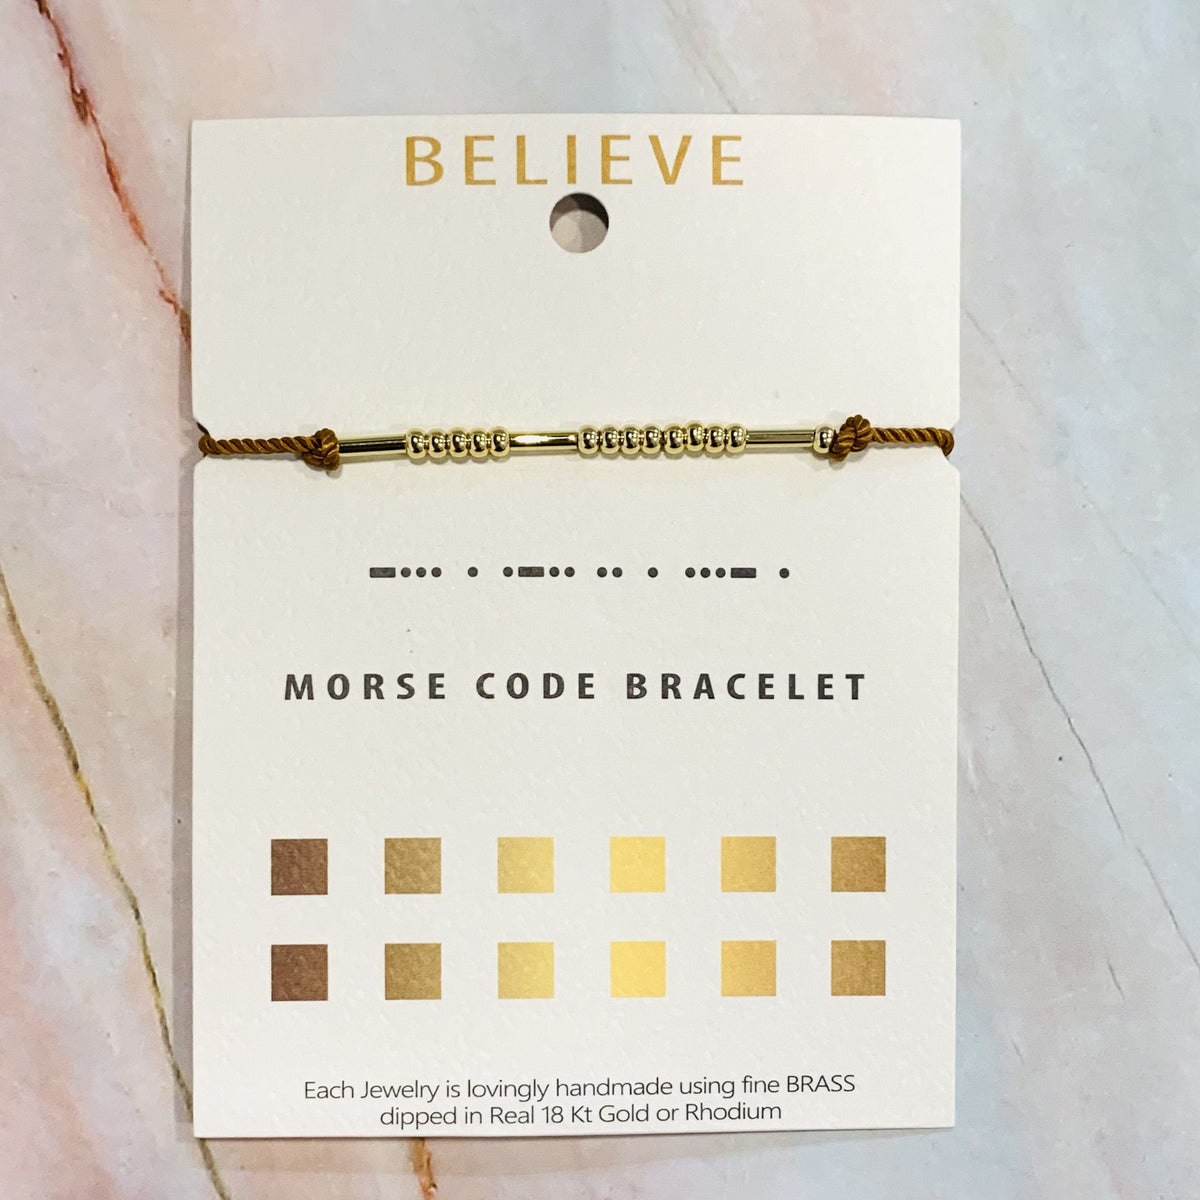 Morse Code Bracelet Lauren-Spencer Believe 